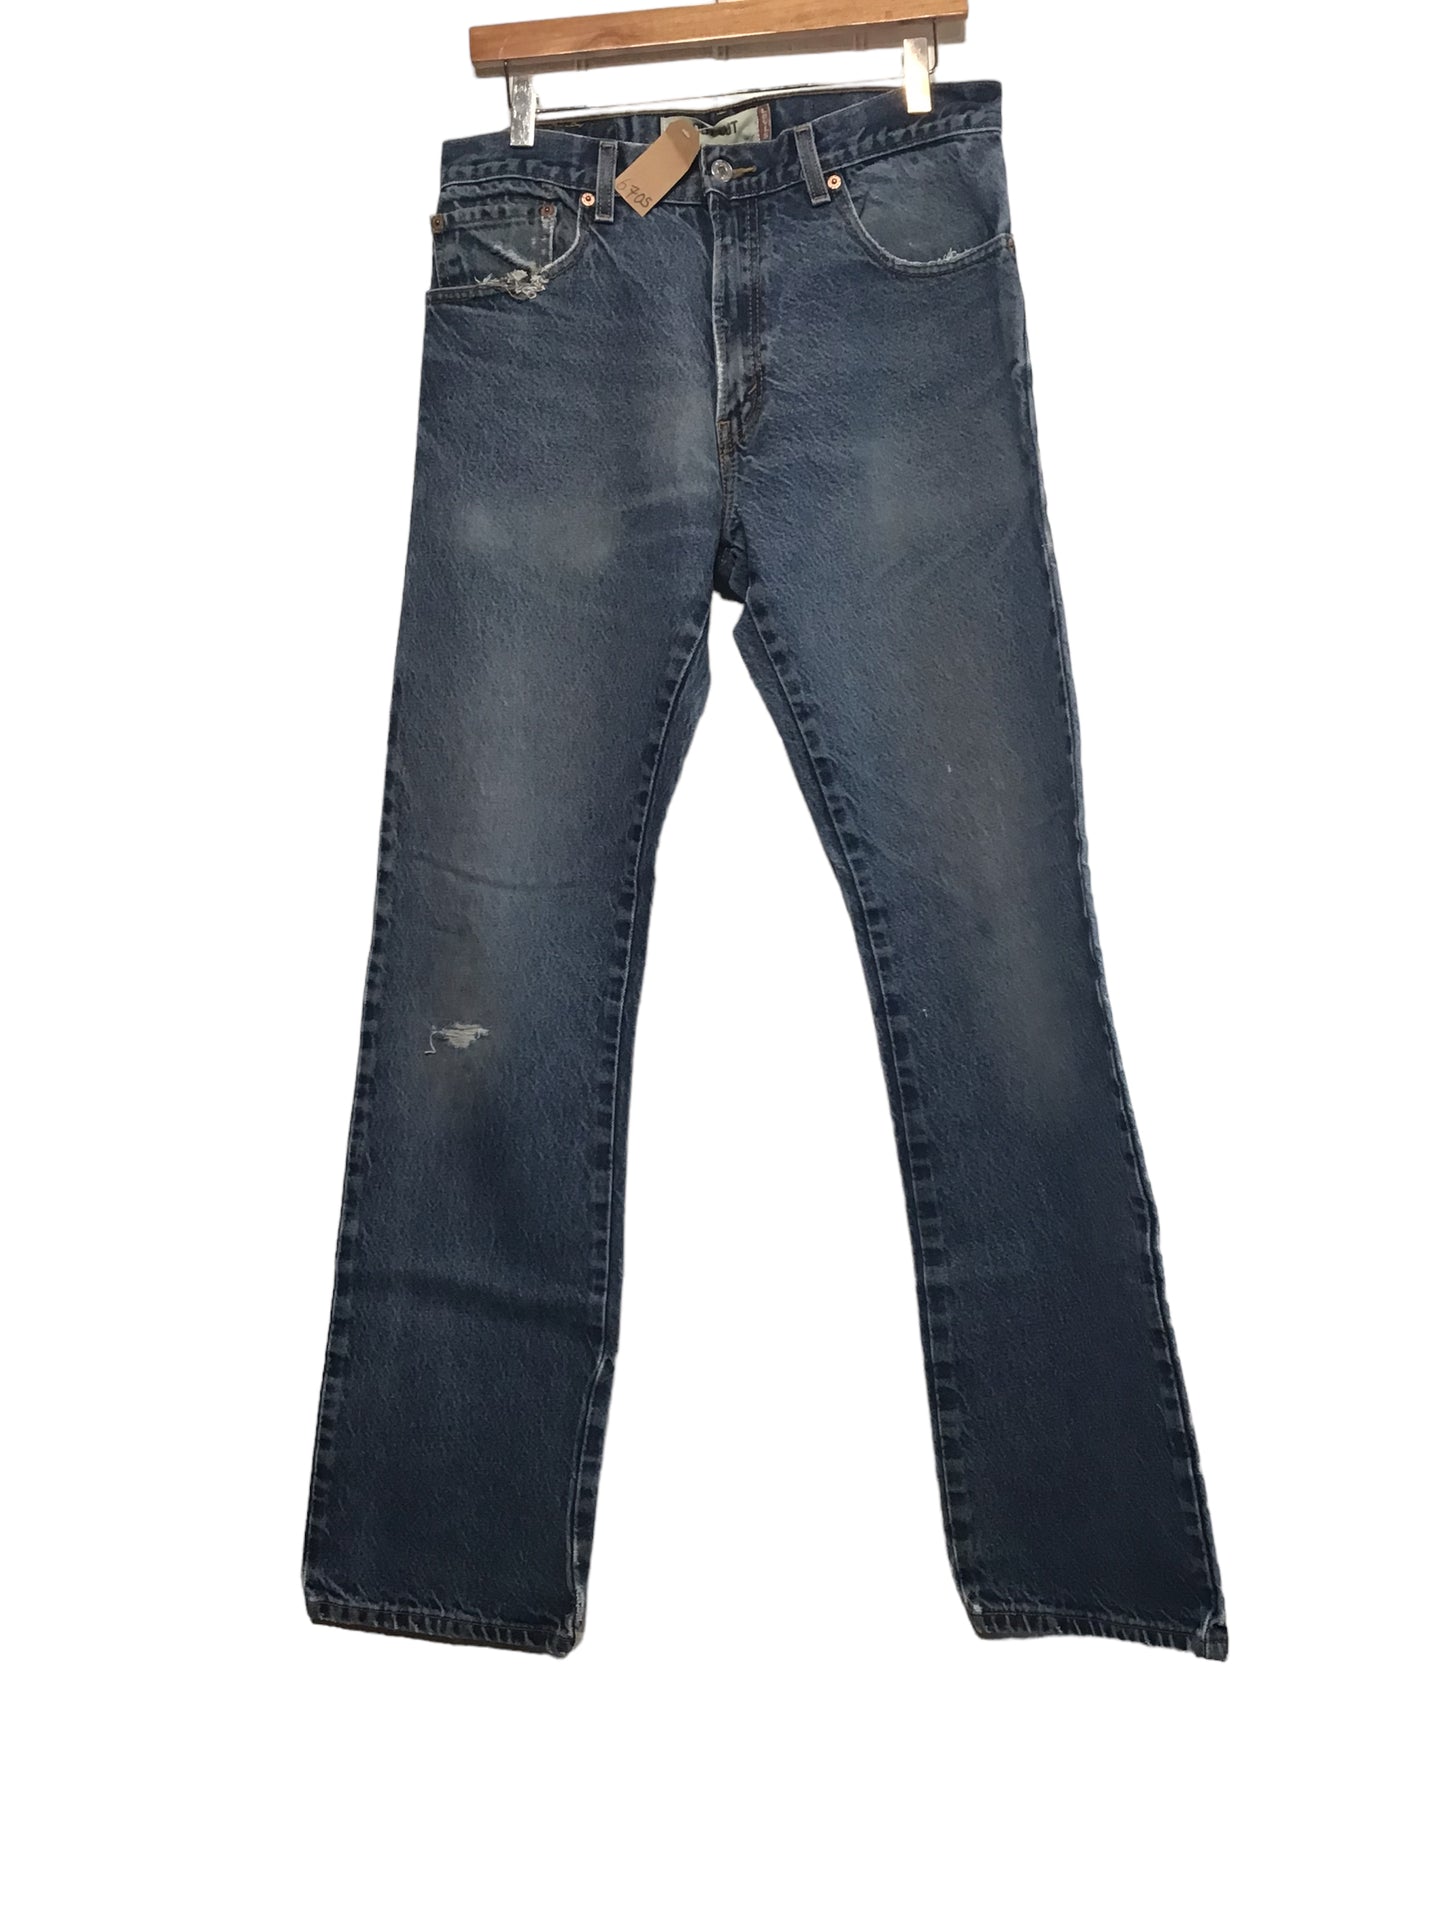 Levi 517 Jeans (32x34)